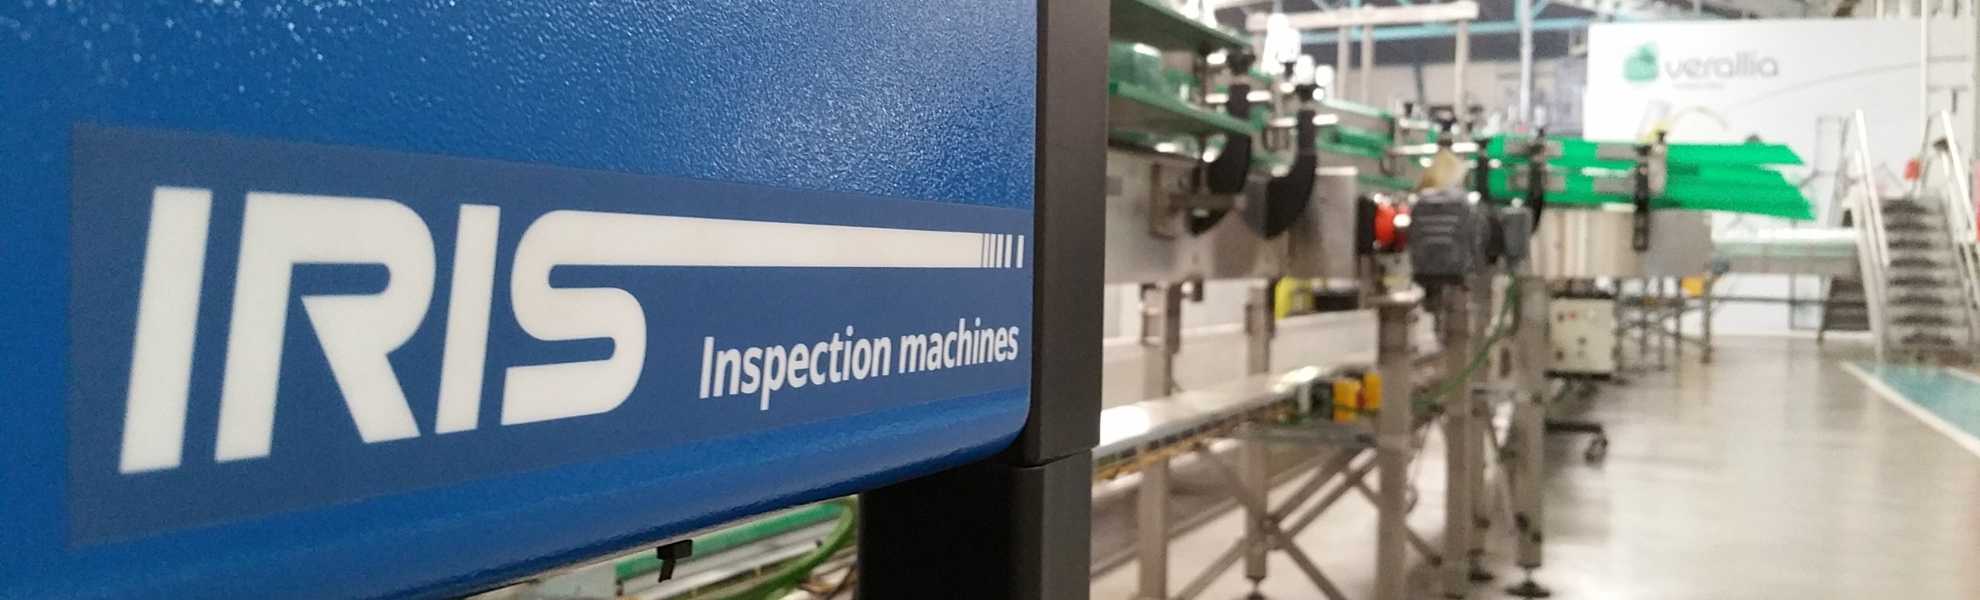 Página Parceiro iIris Inspection Machines - img principal - parceria com Activa